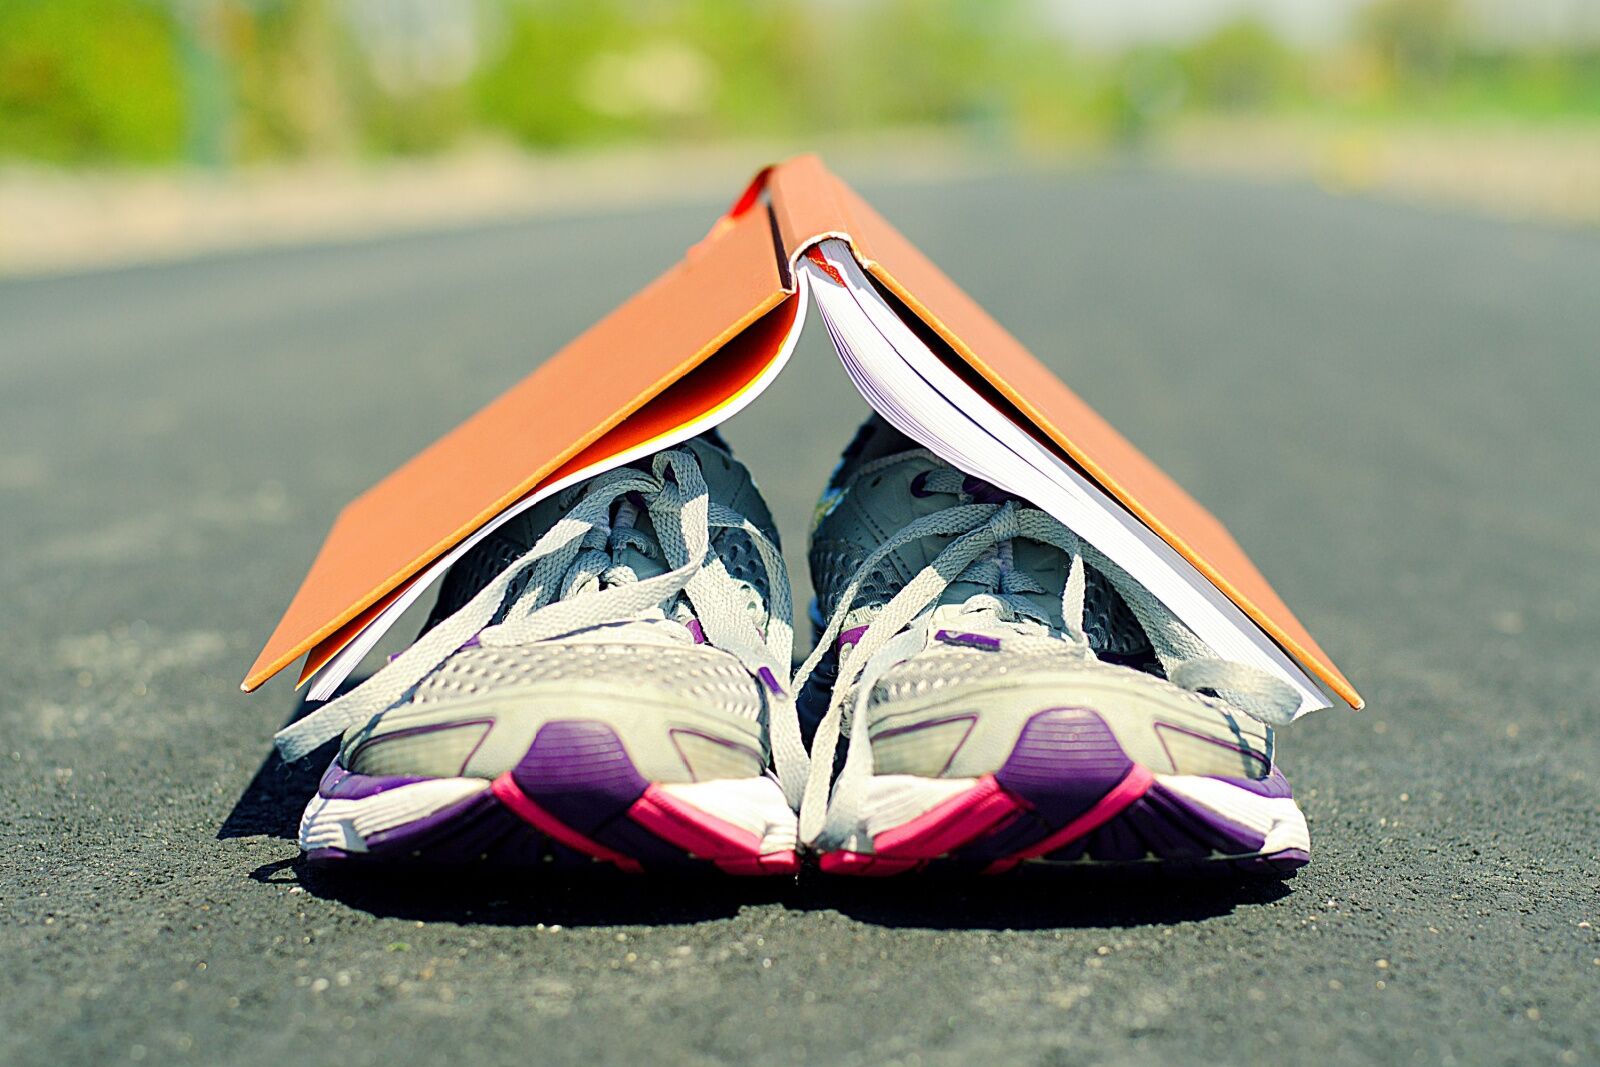 destination marathons book and shoes